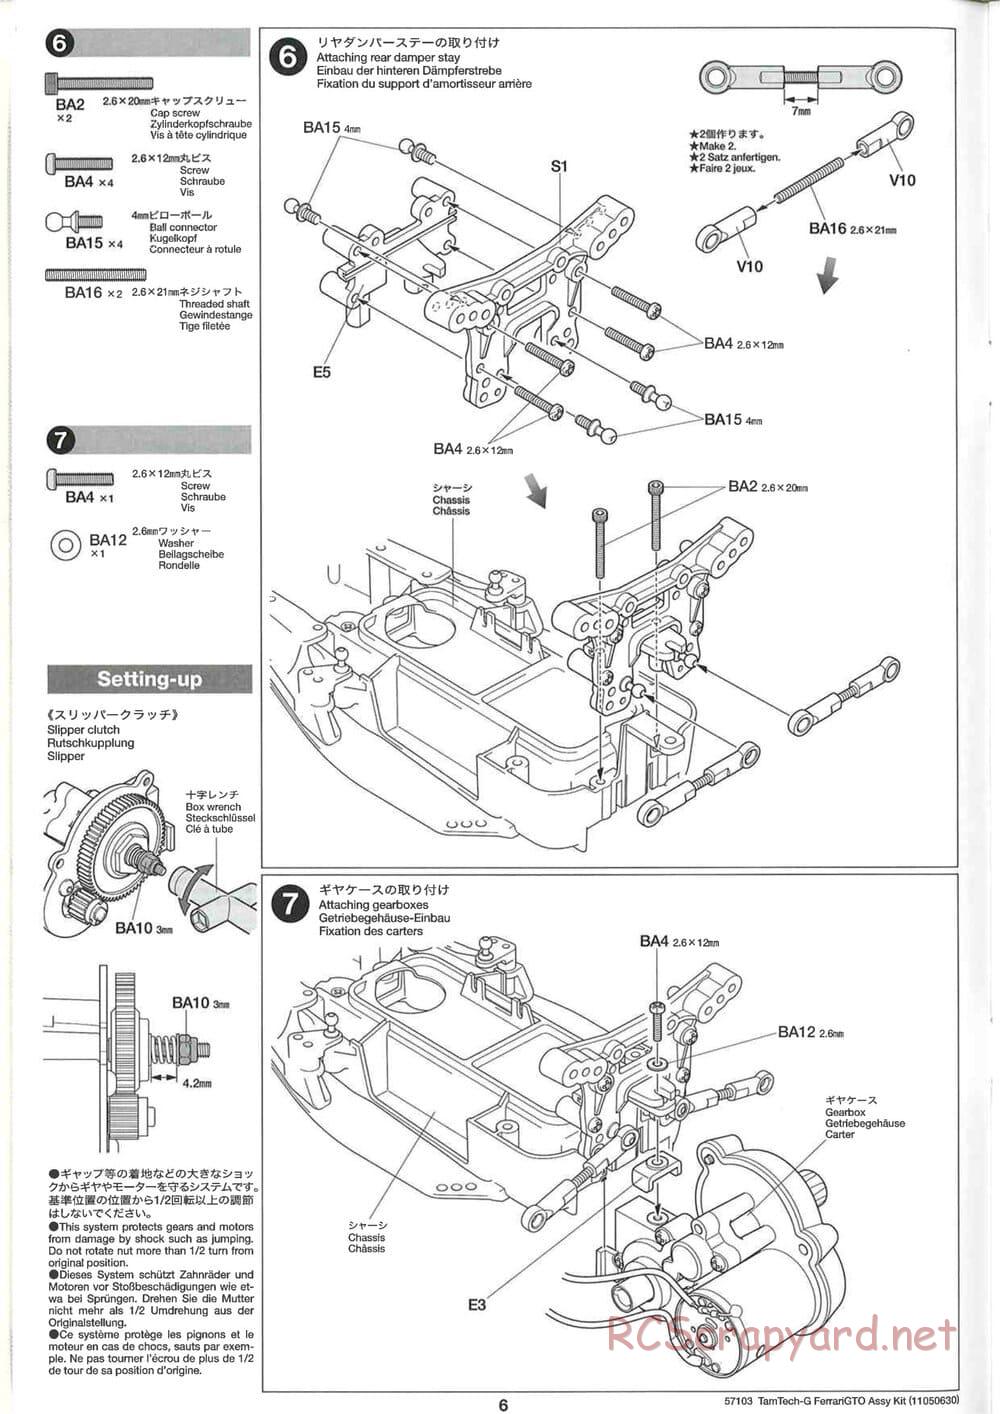 Tamiya - Ferrari 288 GTO - GT-01 Chassis - Manual - Page 6